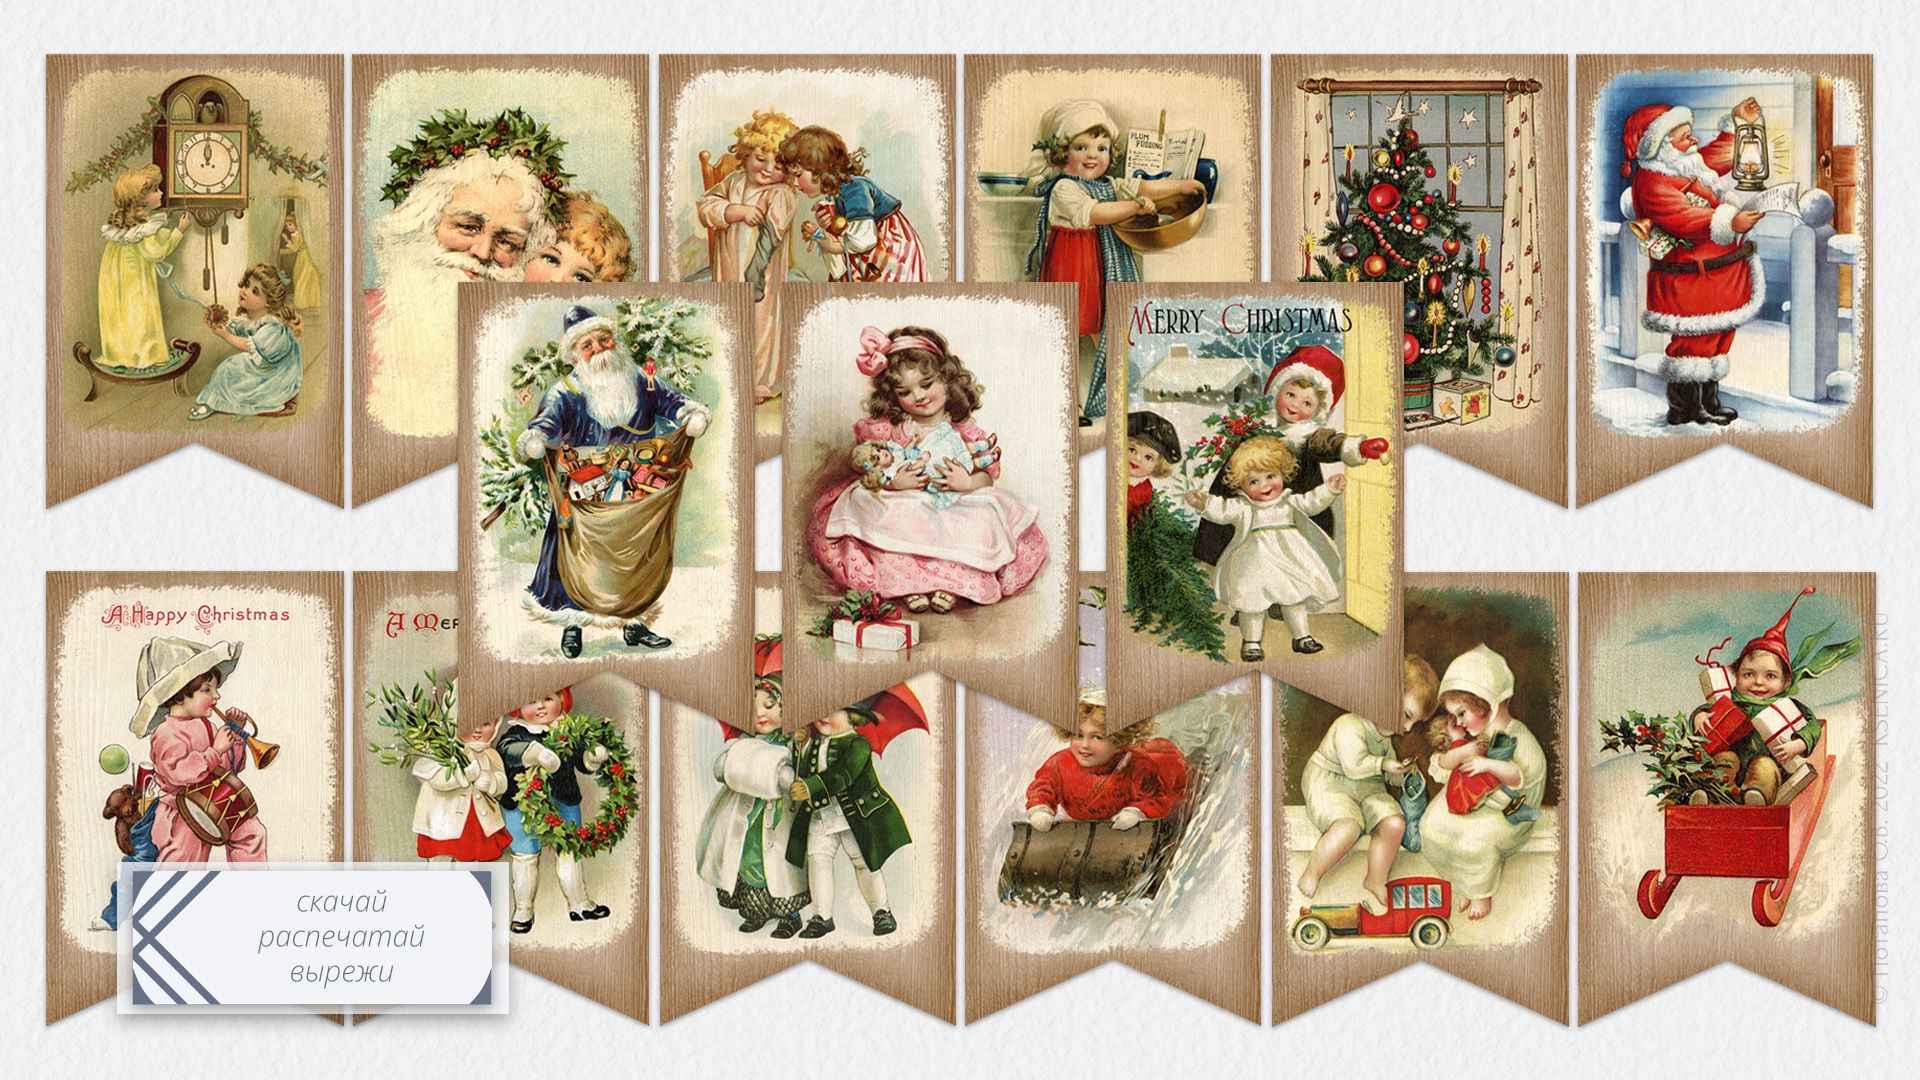 Шаблоны открыток на Новый год и Рождество - бесплатные макеты азинский.рф